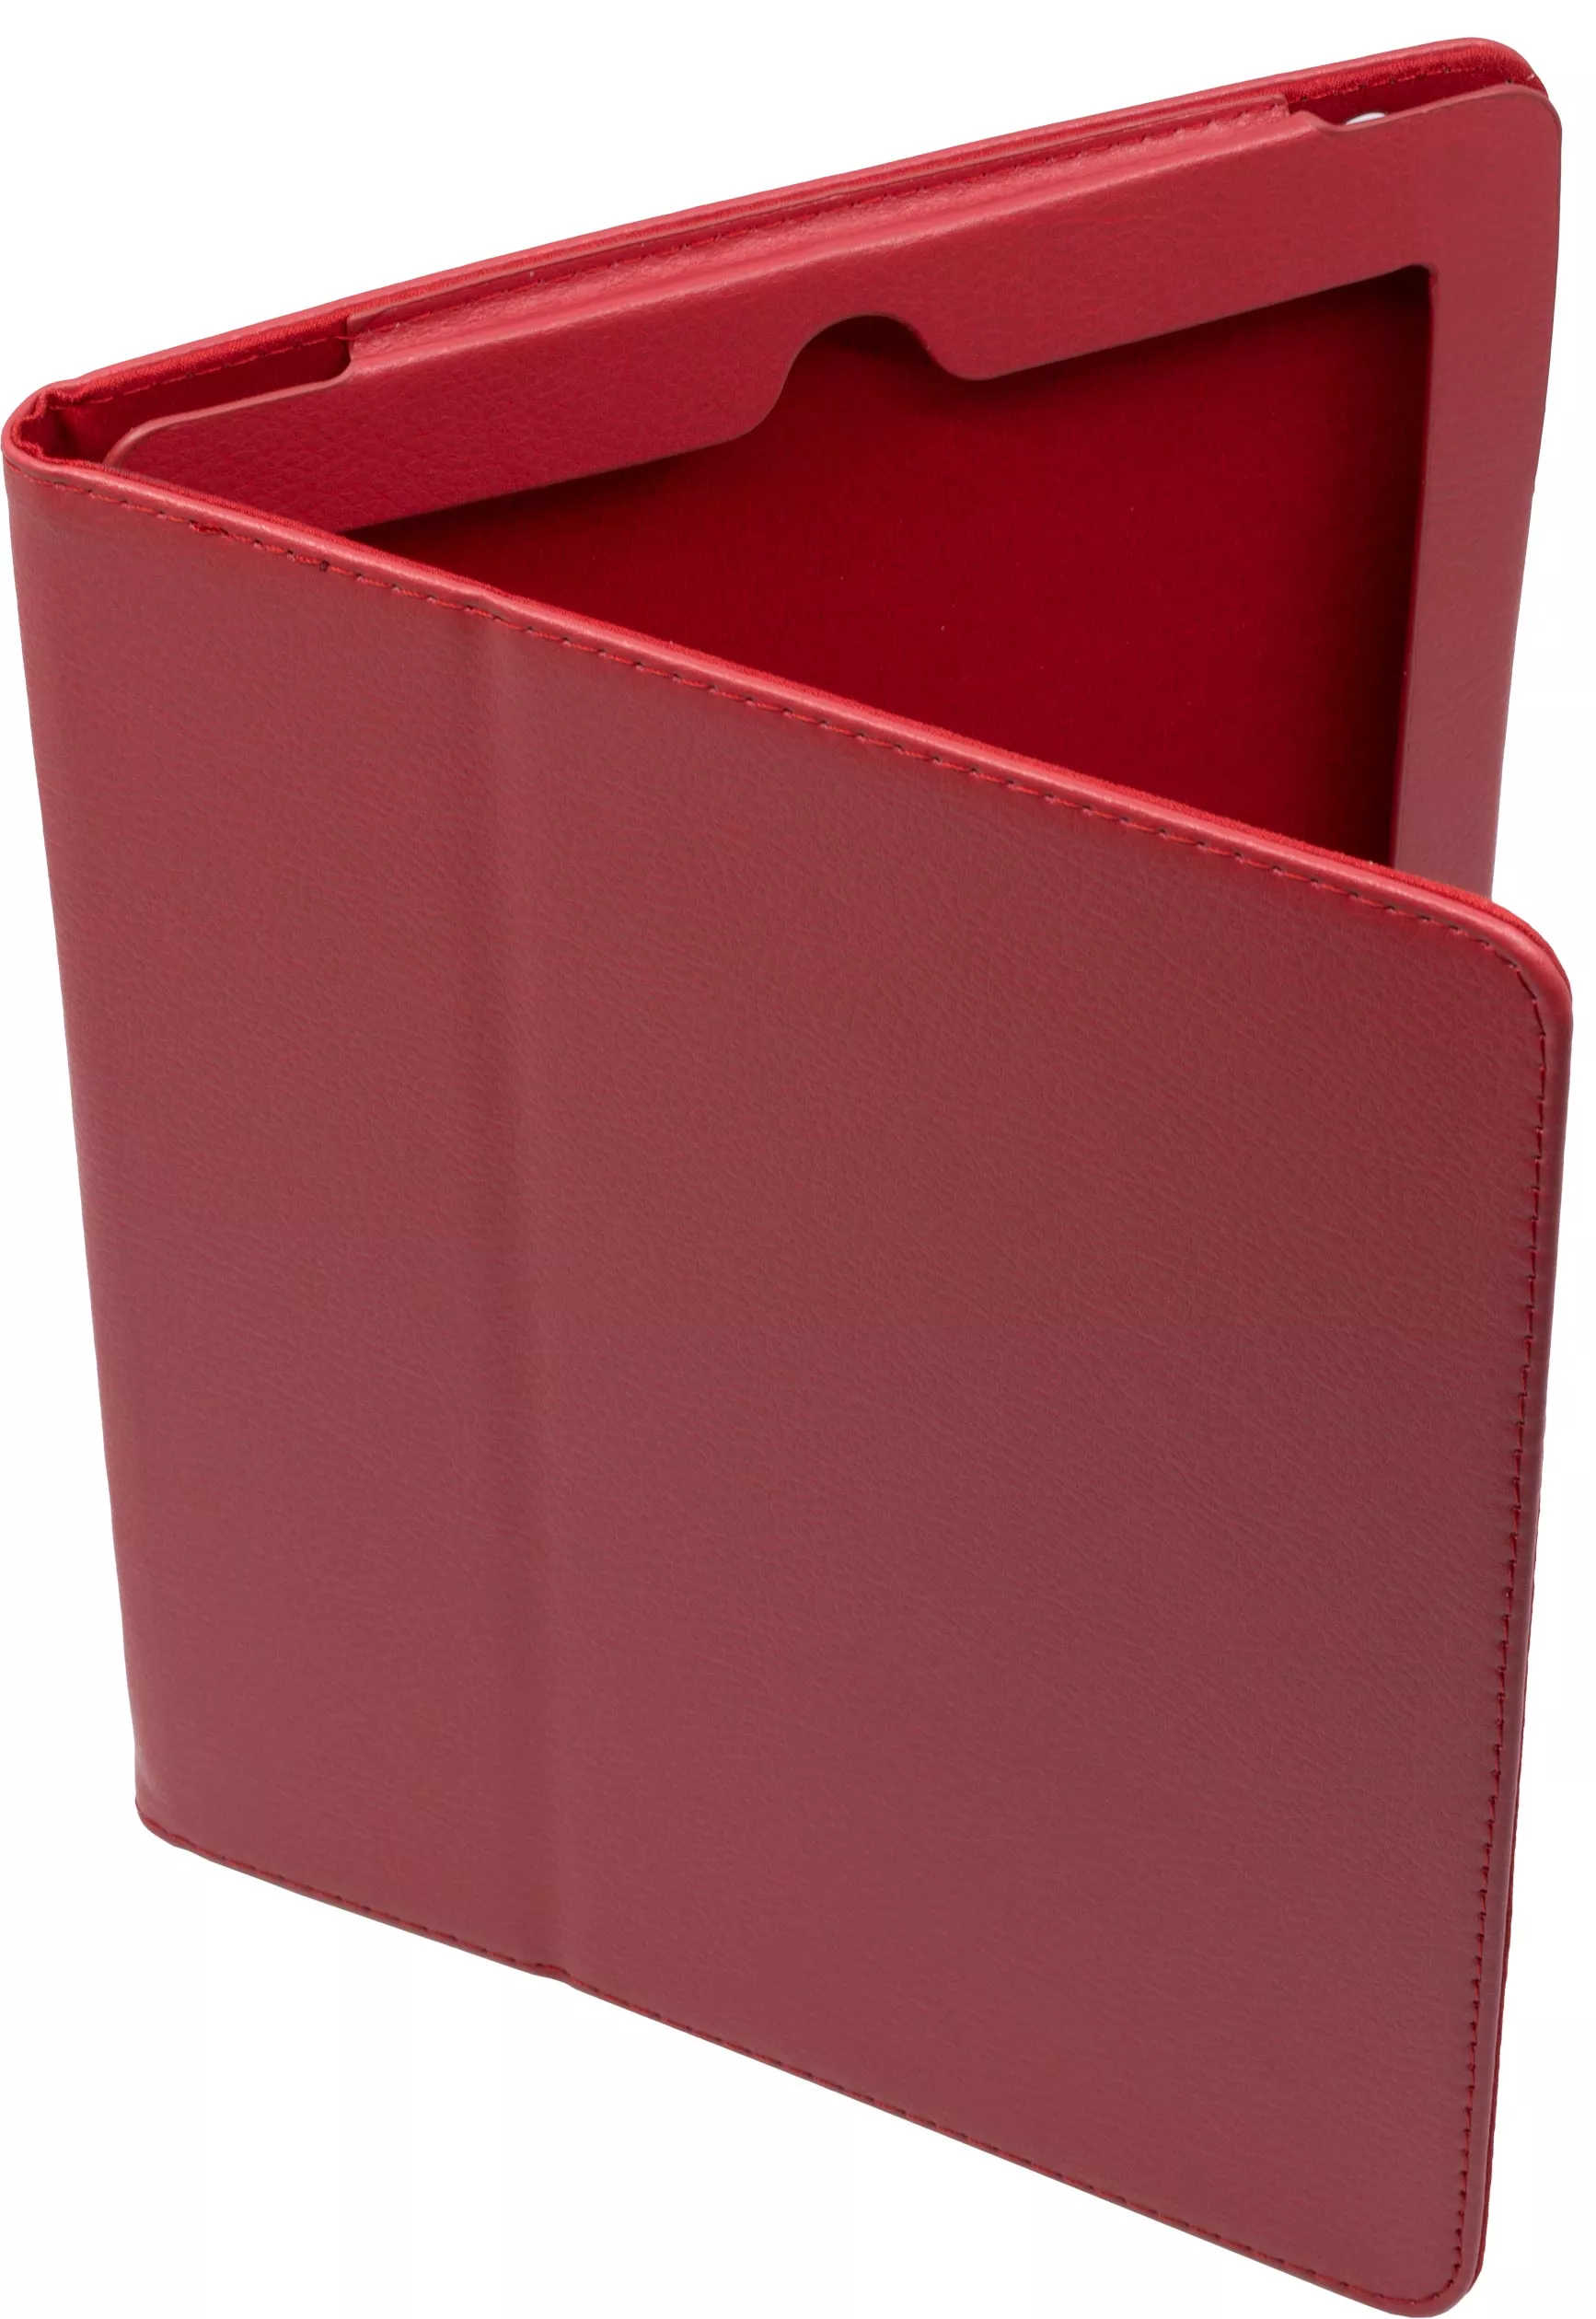 Чехол Stand для iPad 2/3/4 - Красный. Вид 1